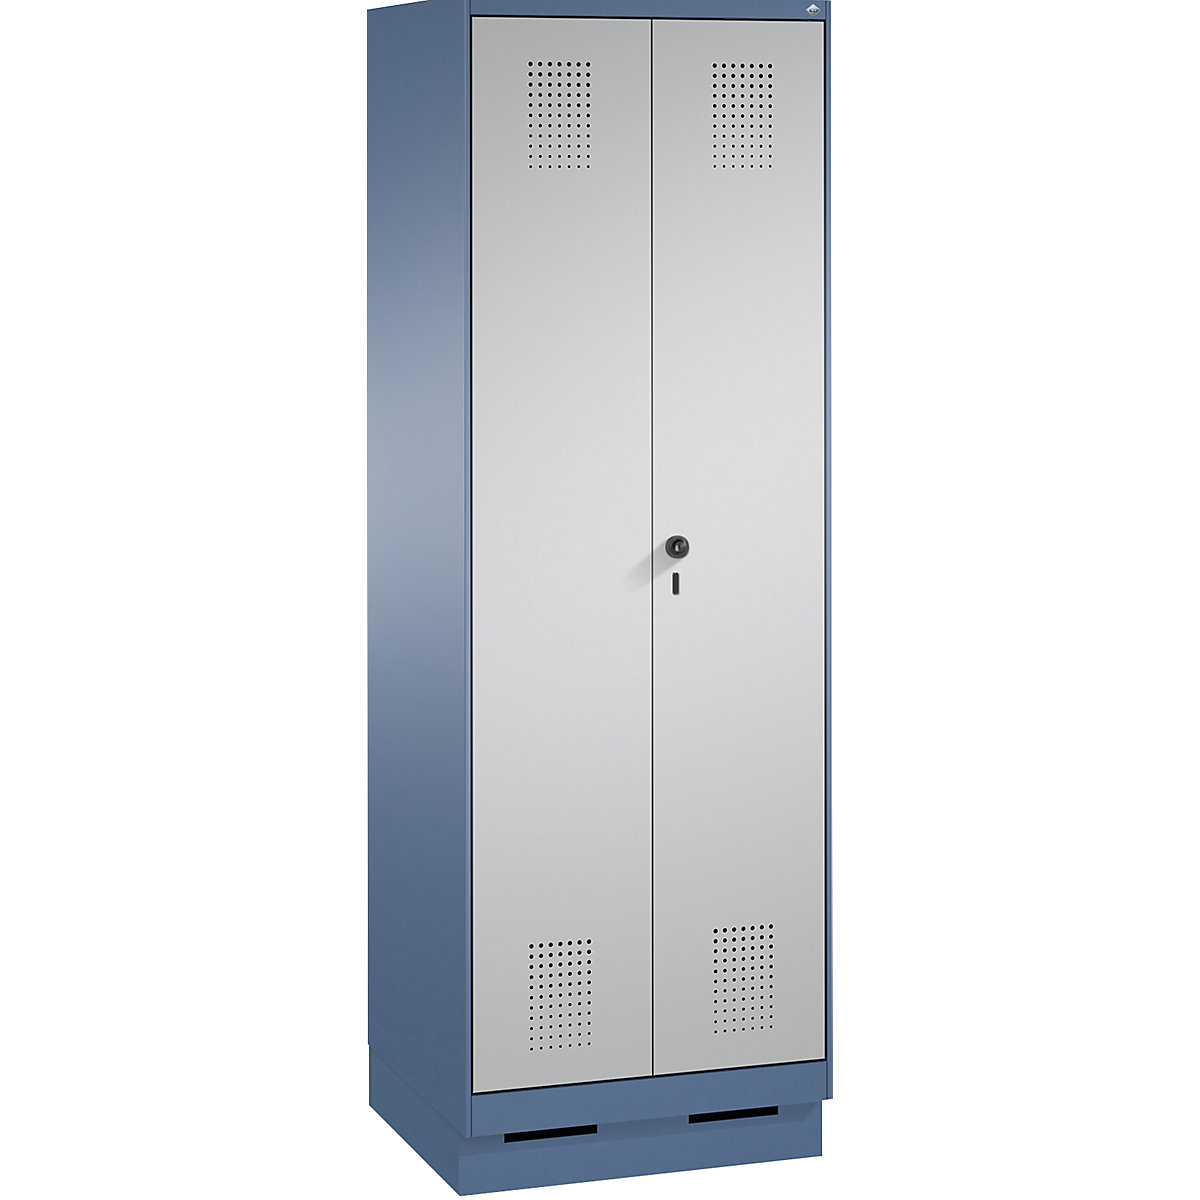 Armário de armazenamento EVOLO, portas que fecham na direção uma da outra, com rodapé – C+P, 2 compartimentos, largura do compartimento 300 mm, com 8 prateleiras, azul distante / cinza alumínio-9